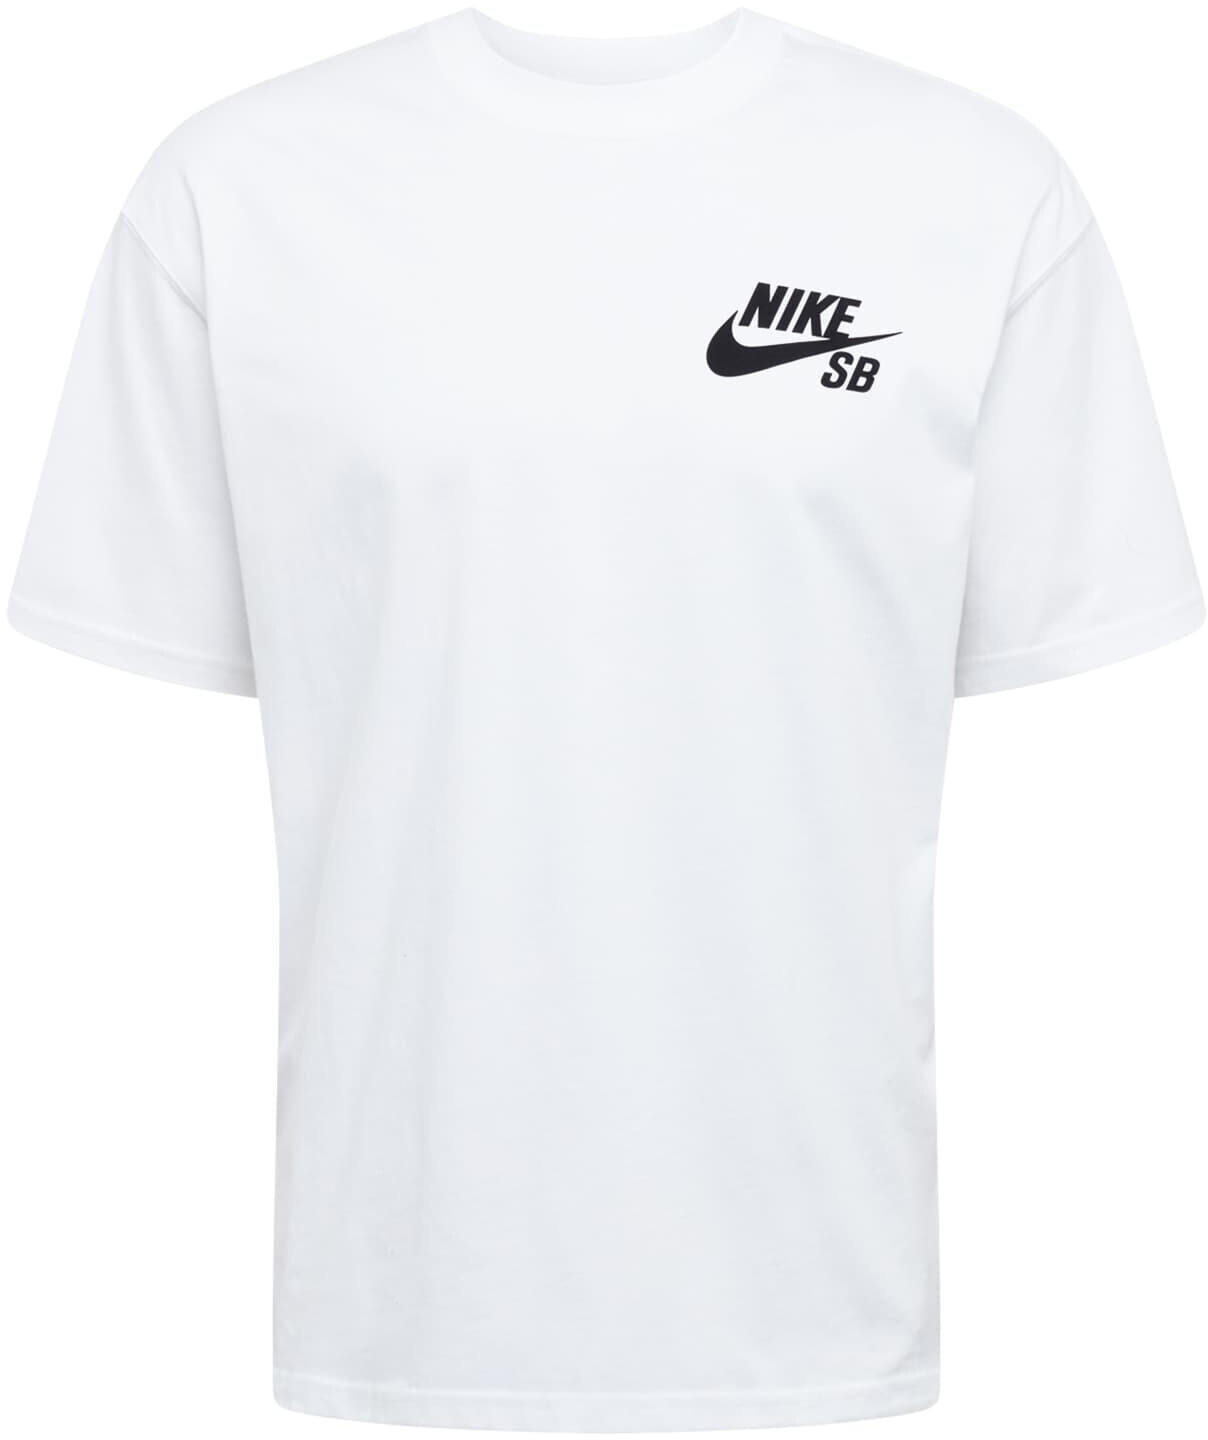 Nike SB Tee Small Logo White/Black